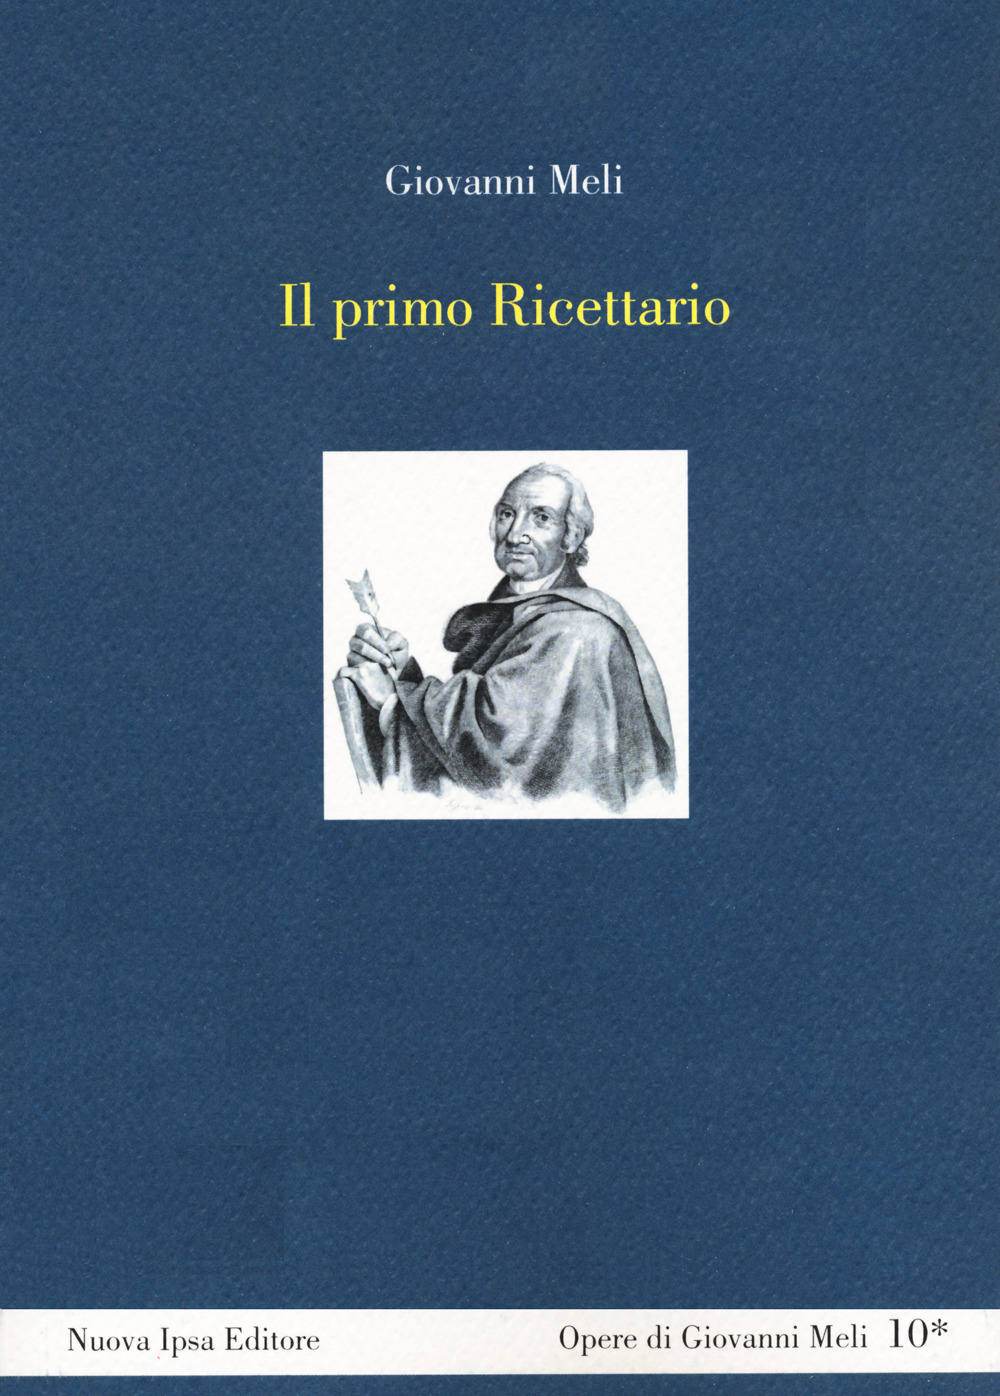 Libri Giovanni Meli - Il Primo Ricettario NUOVO SIGILLATO, EDIZIONE DEL 13/07/2022 SUBITO DISPONIBILE